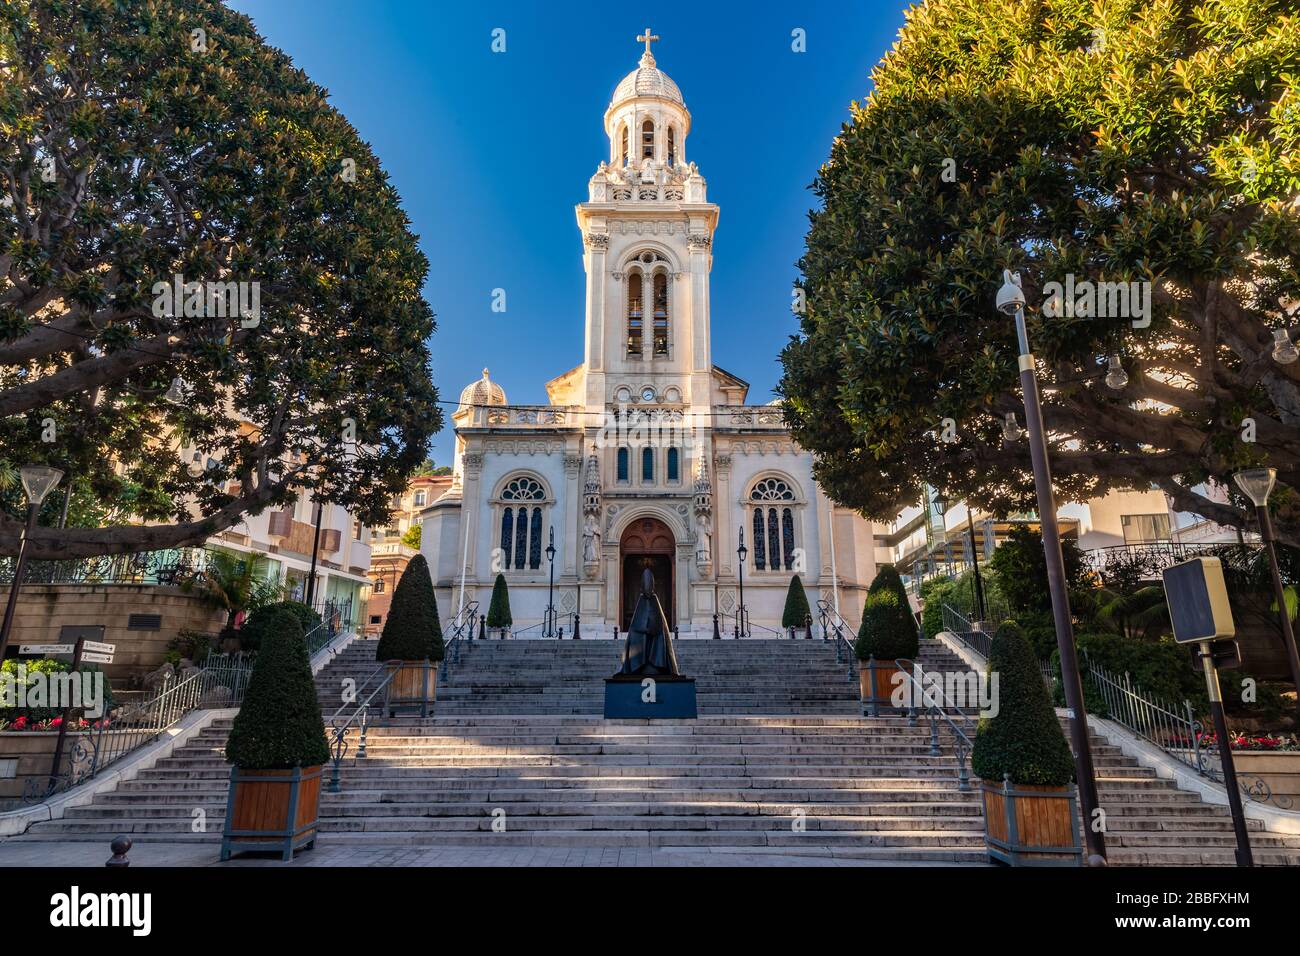 Monaco, Monte Carlo, 25 décembre 2019: L'église catholique Église Saint-Charles au coucher du soleil, escaliers, arbres verts, sans peuple Banque D'Images